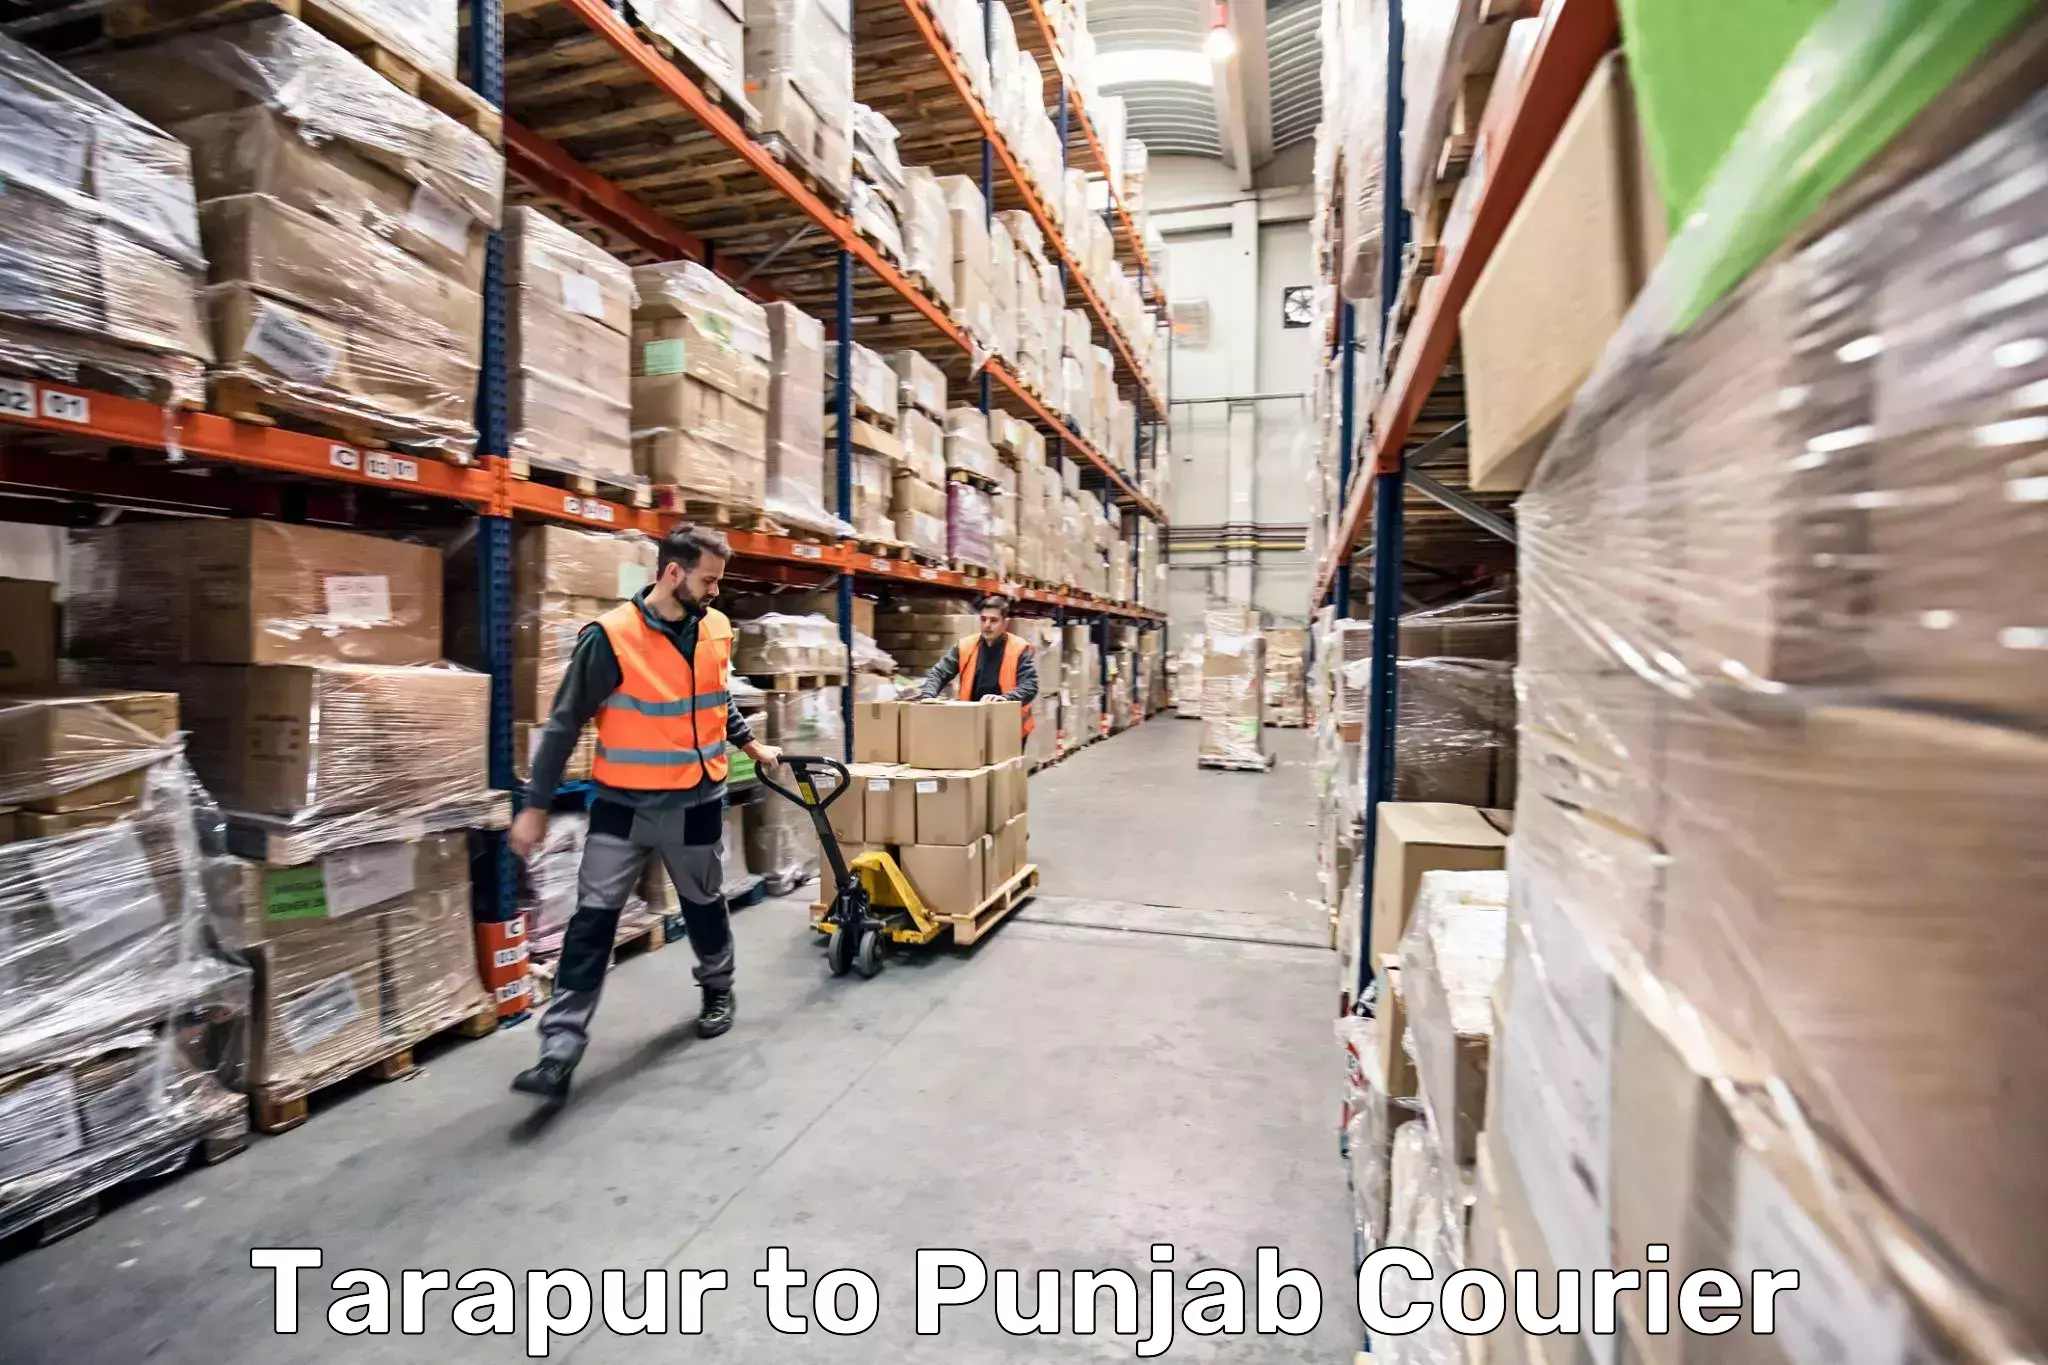 Baggage shipping experts Tarapur to Amritsar